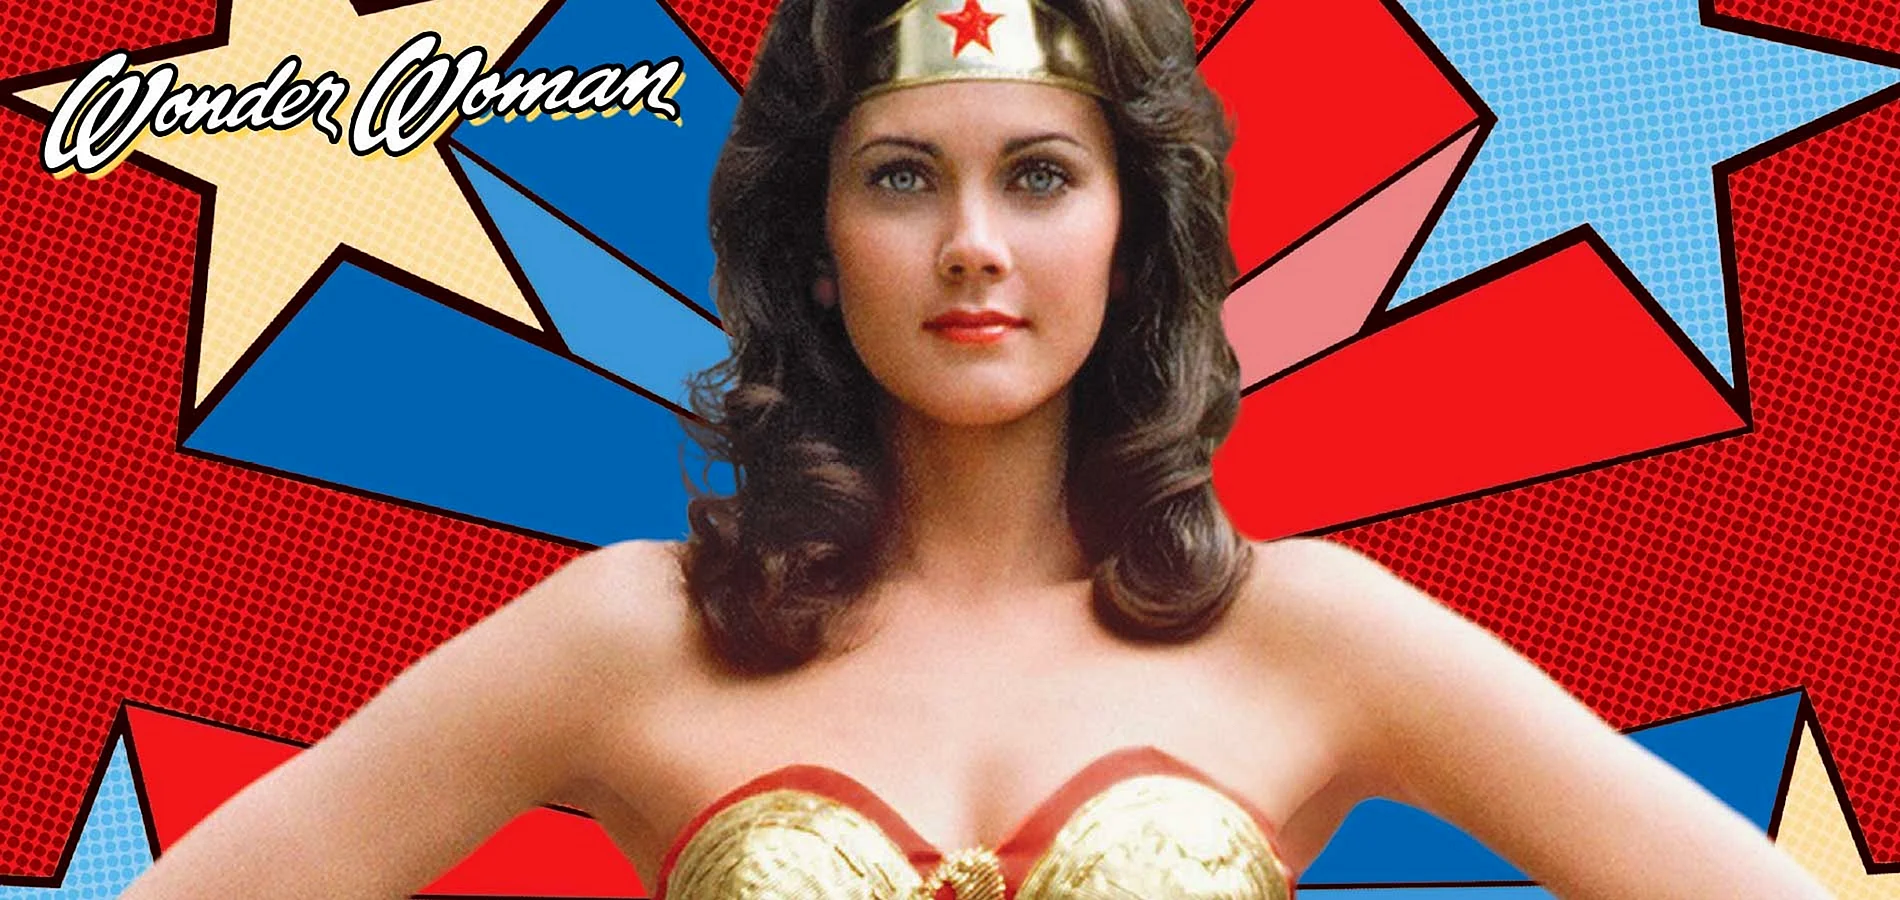 Wonder Woman Tv Show Wallpaper